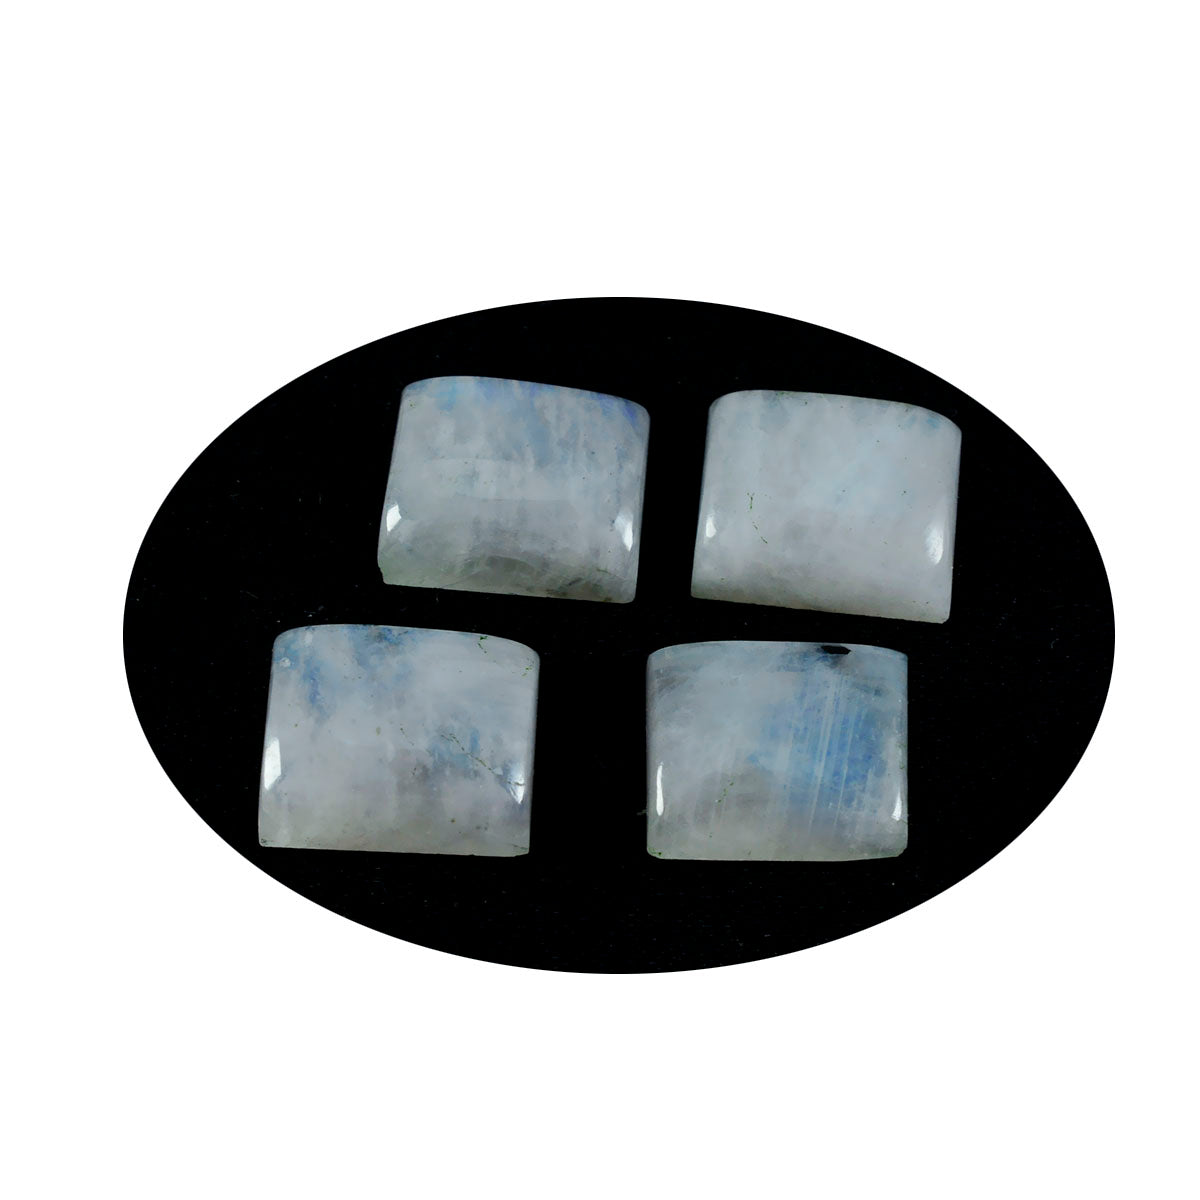 Riyogems 1 Stück weißer Regenbogen-Mondstein-Cabochon, 10 x 14 mm, achteckige Form, schöne, hochwertige lose Edelsteine